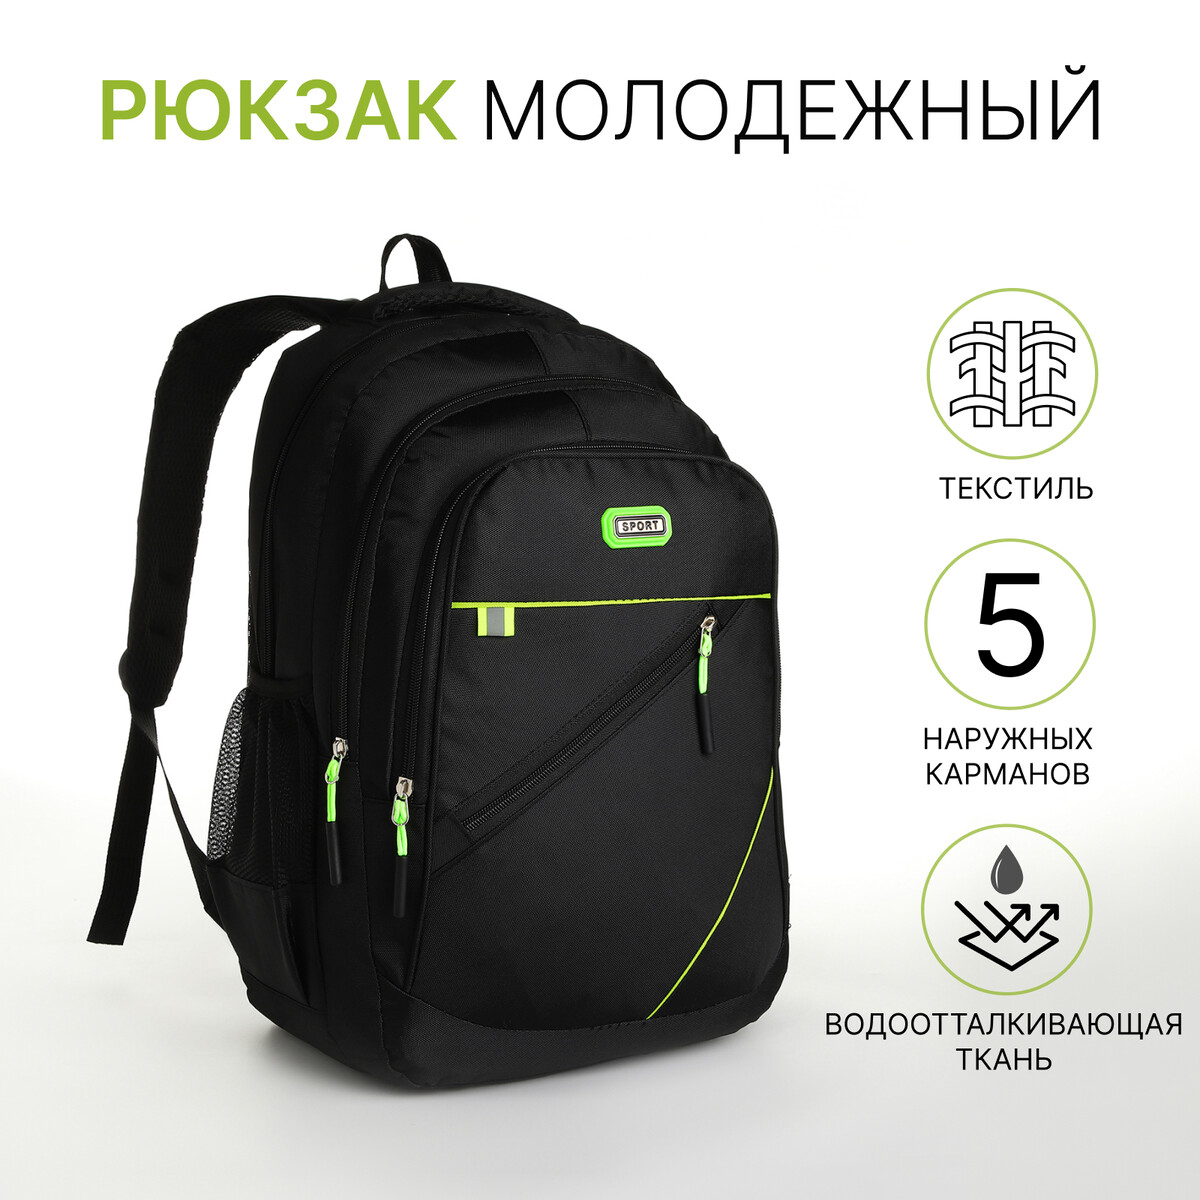 Рюкзак молодежный из текстиля на молнии, 5 карманов, цвет черный/зеленый